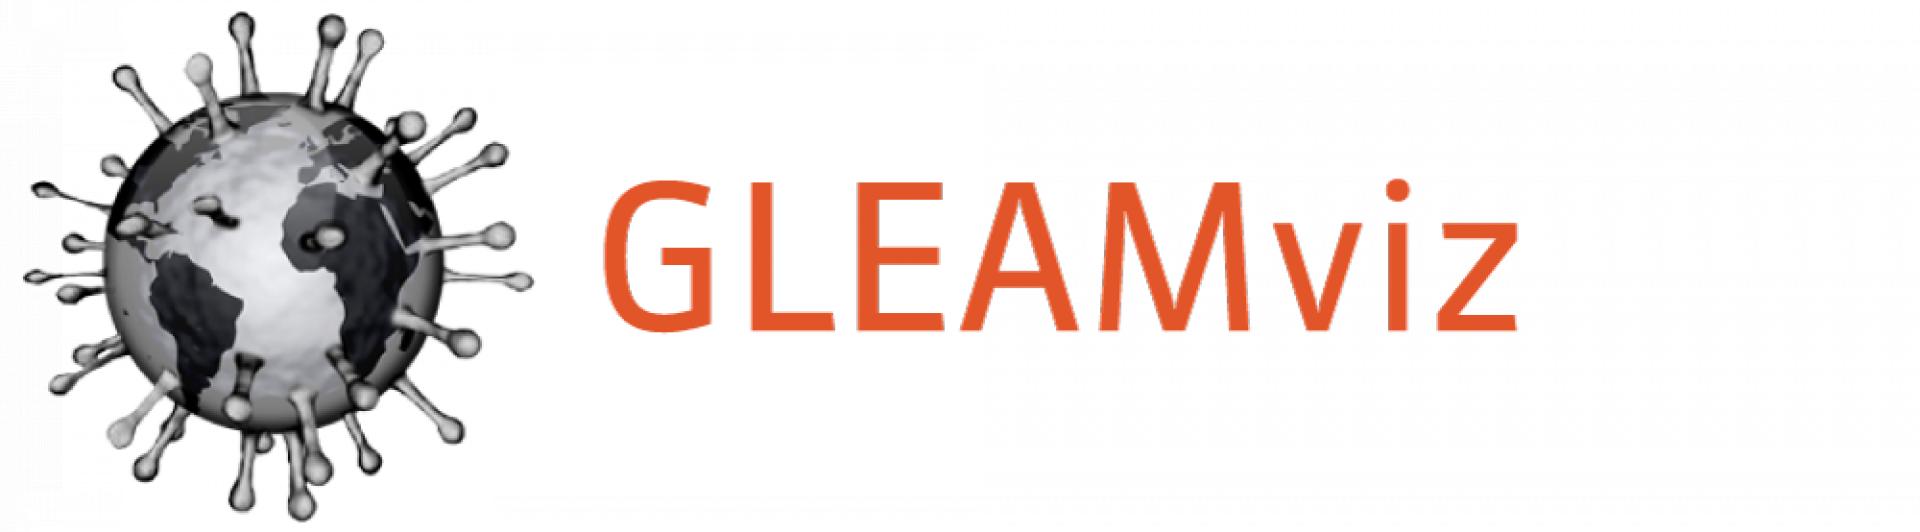 GLEAMviz logo